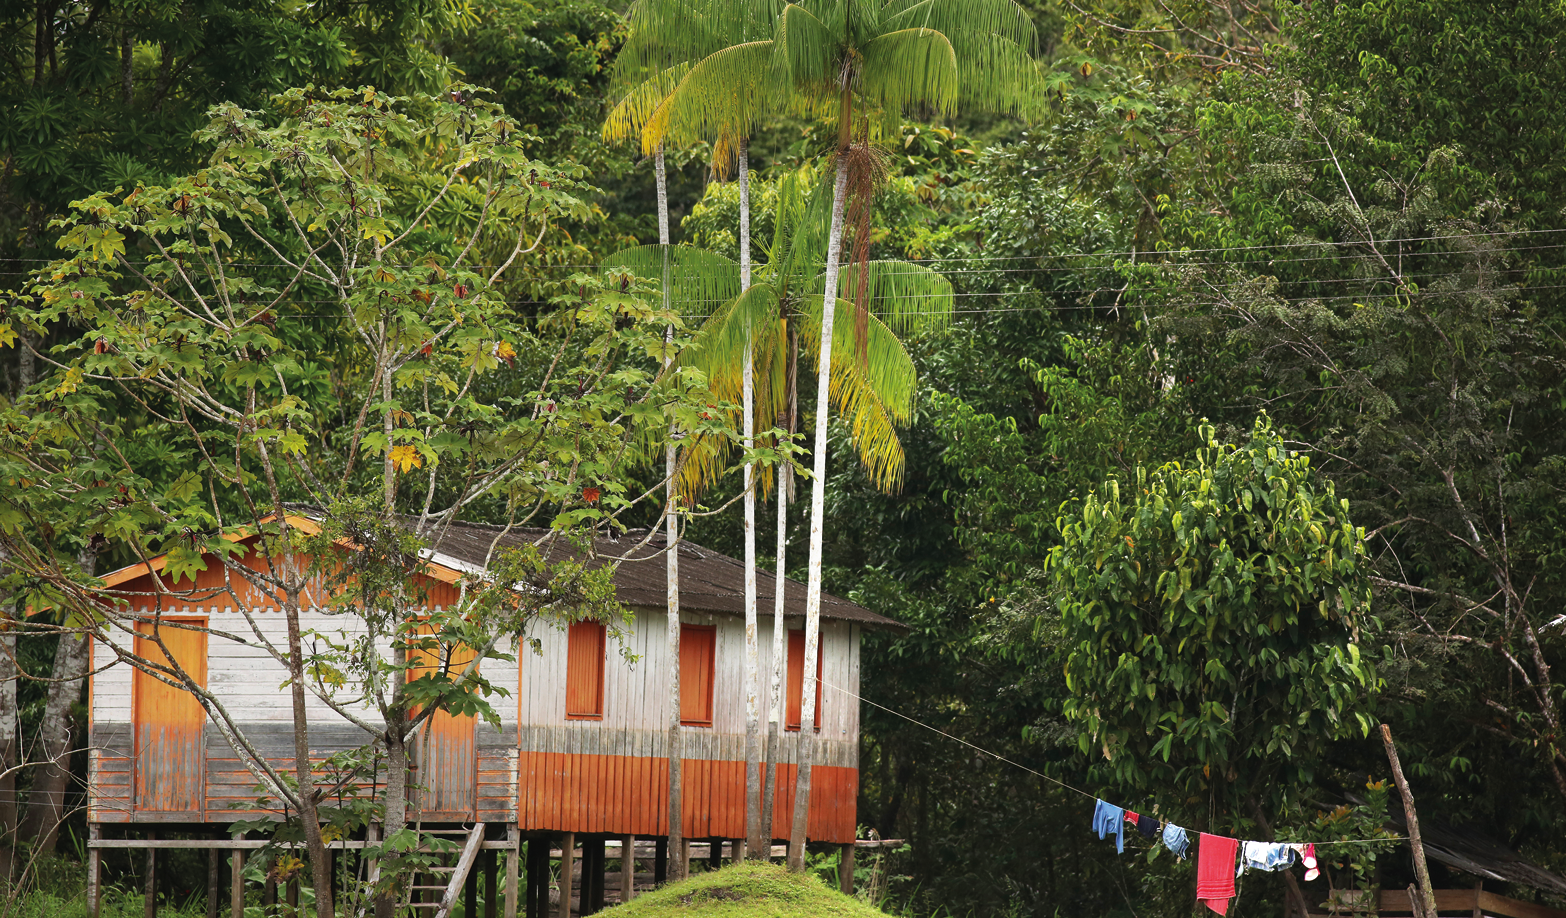 Fotografia. À esquerda, uma casa na horizontal em tons de bege e partes em laranja e telhado em triângulo em marrom. Ela está sobre estruturas finas na vertical e ao redor, várias árvores de folhas verdes. Na ponta da direita, um varal com roupas estendidas.